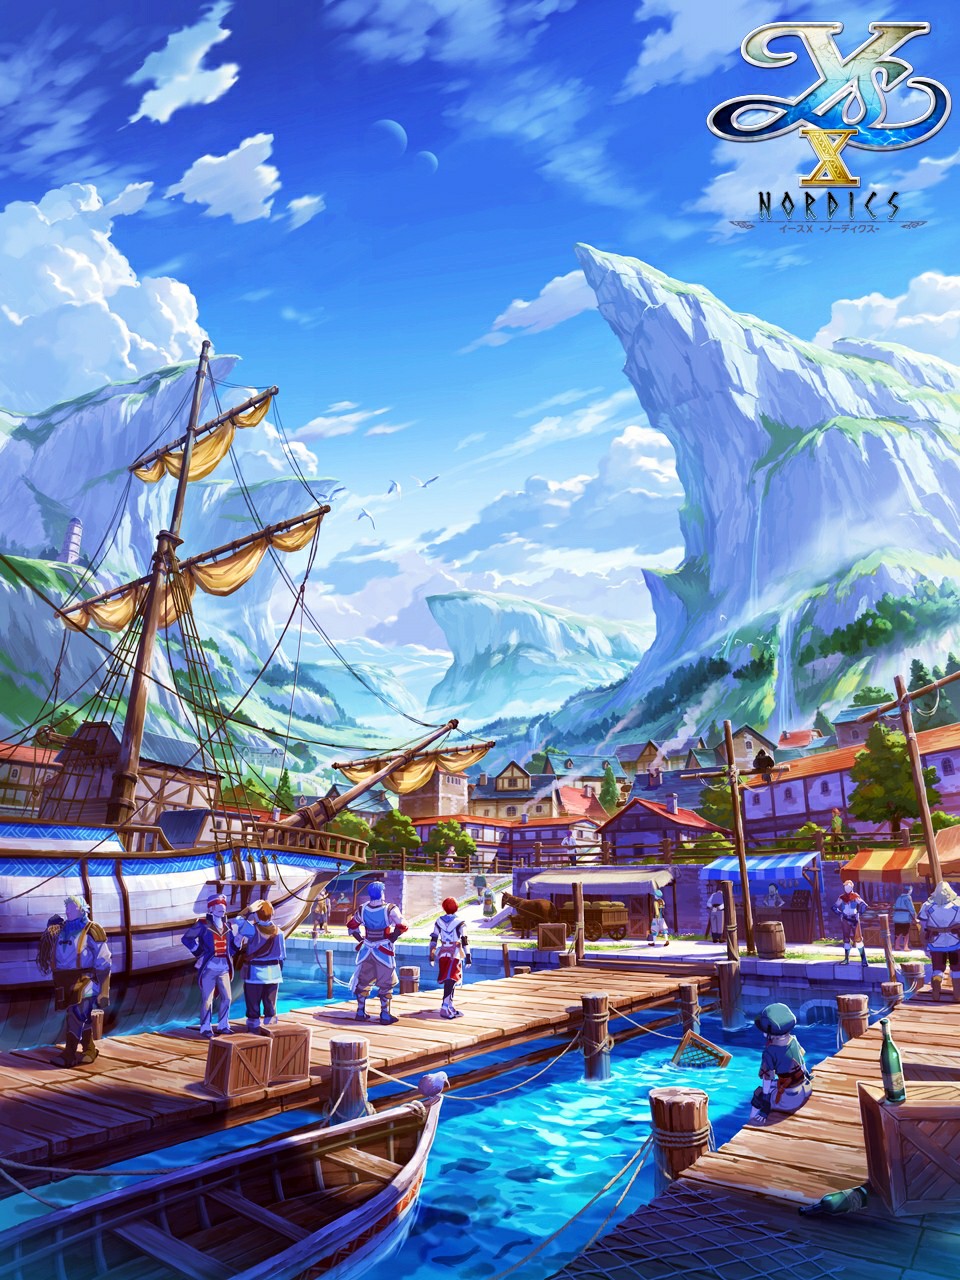 《伊蘇10》新遊戲概唸圖公佈 展示港口城市卡納尅